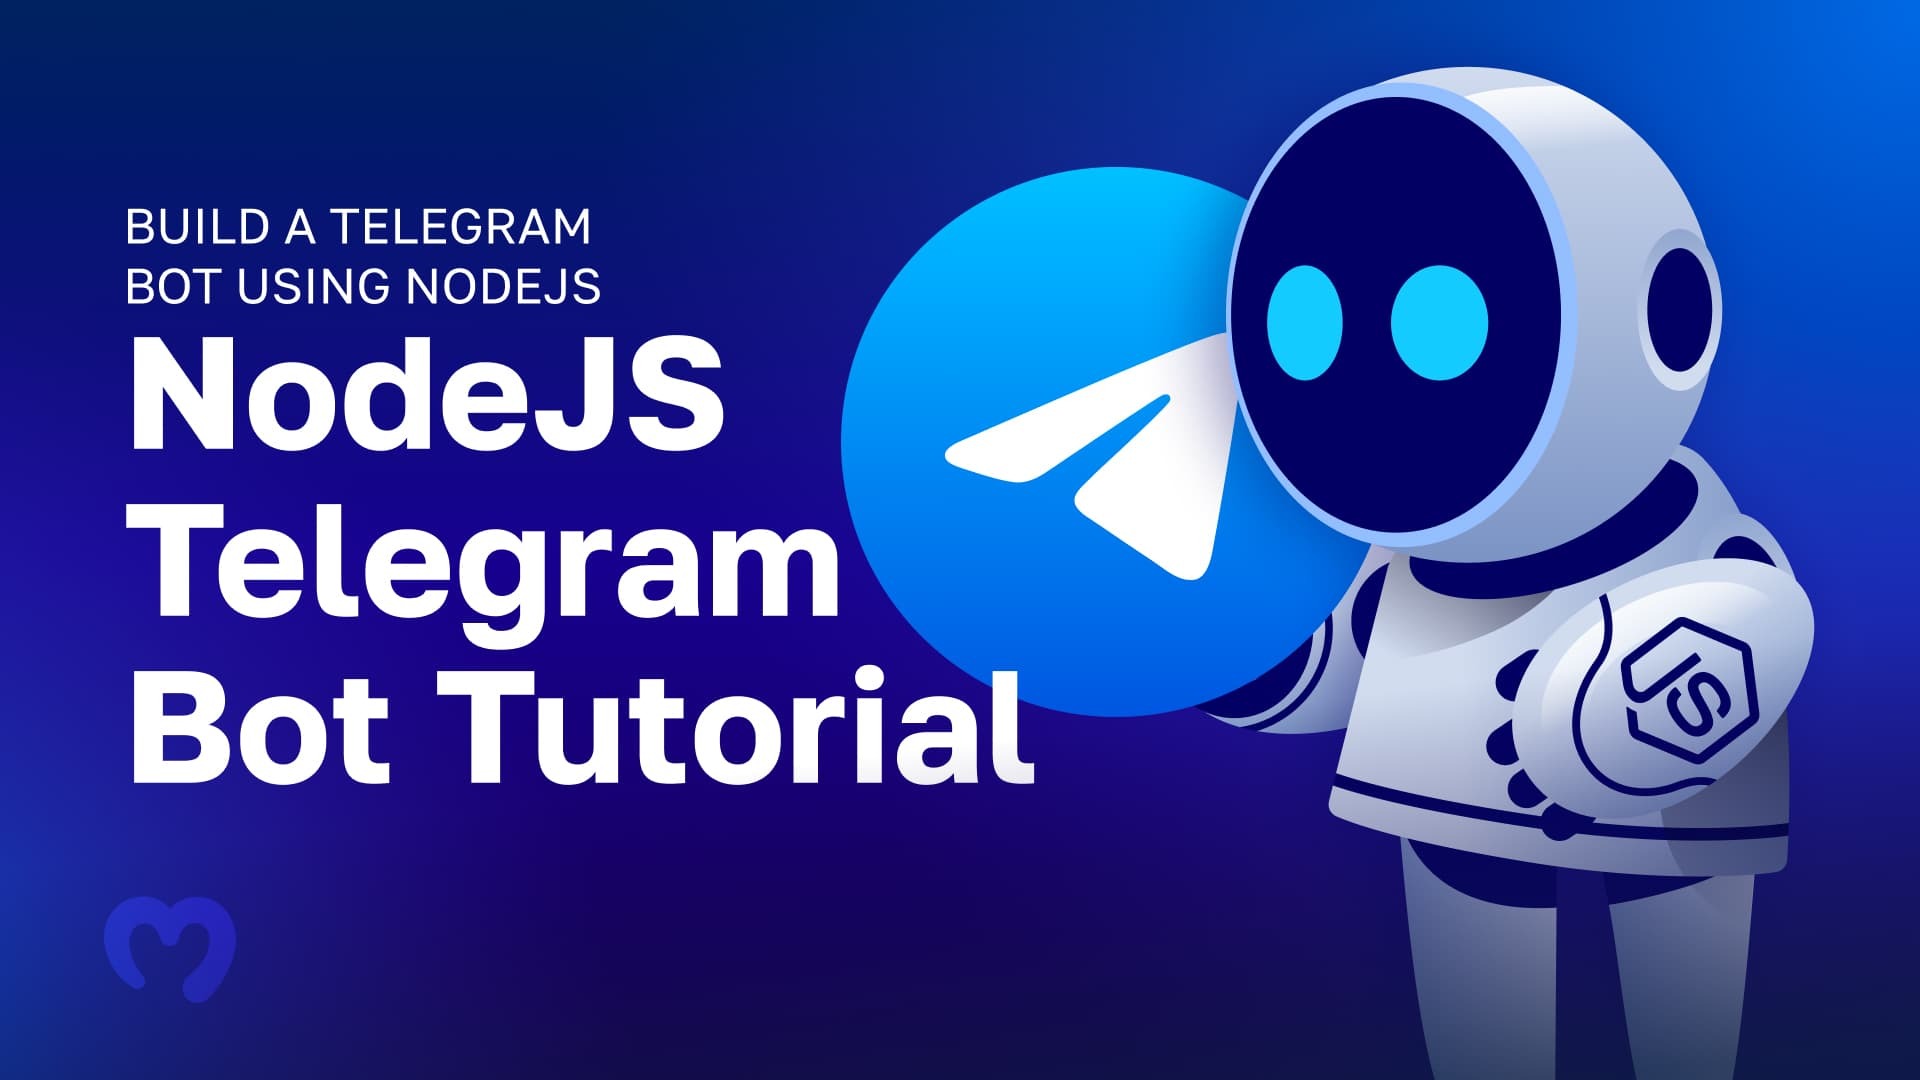 Easy NodeJS Telegram Bot Tutorial - Build a Telegram Bot Using NodeJS in Three Steps